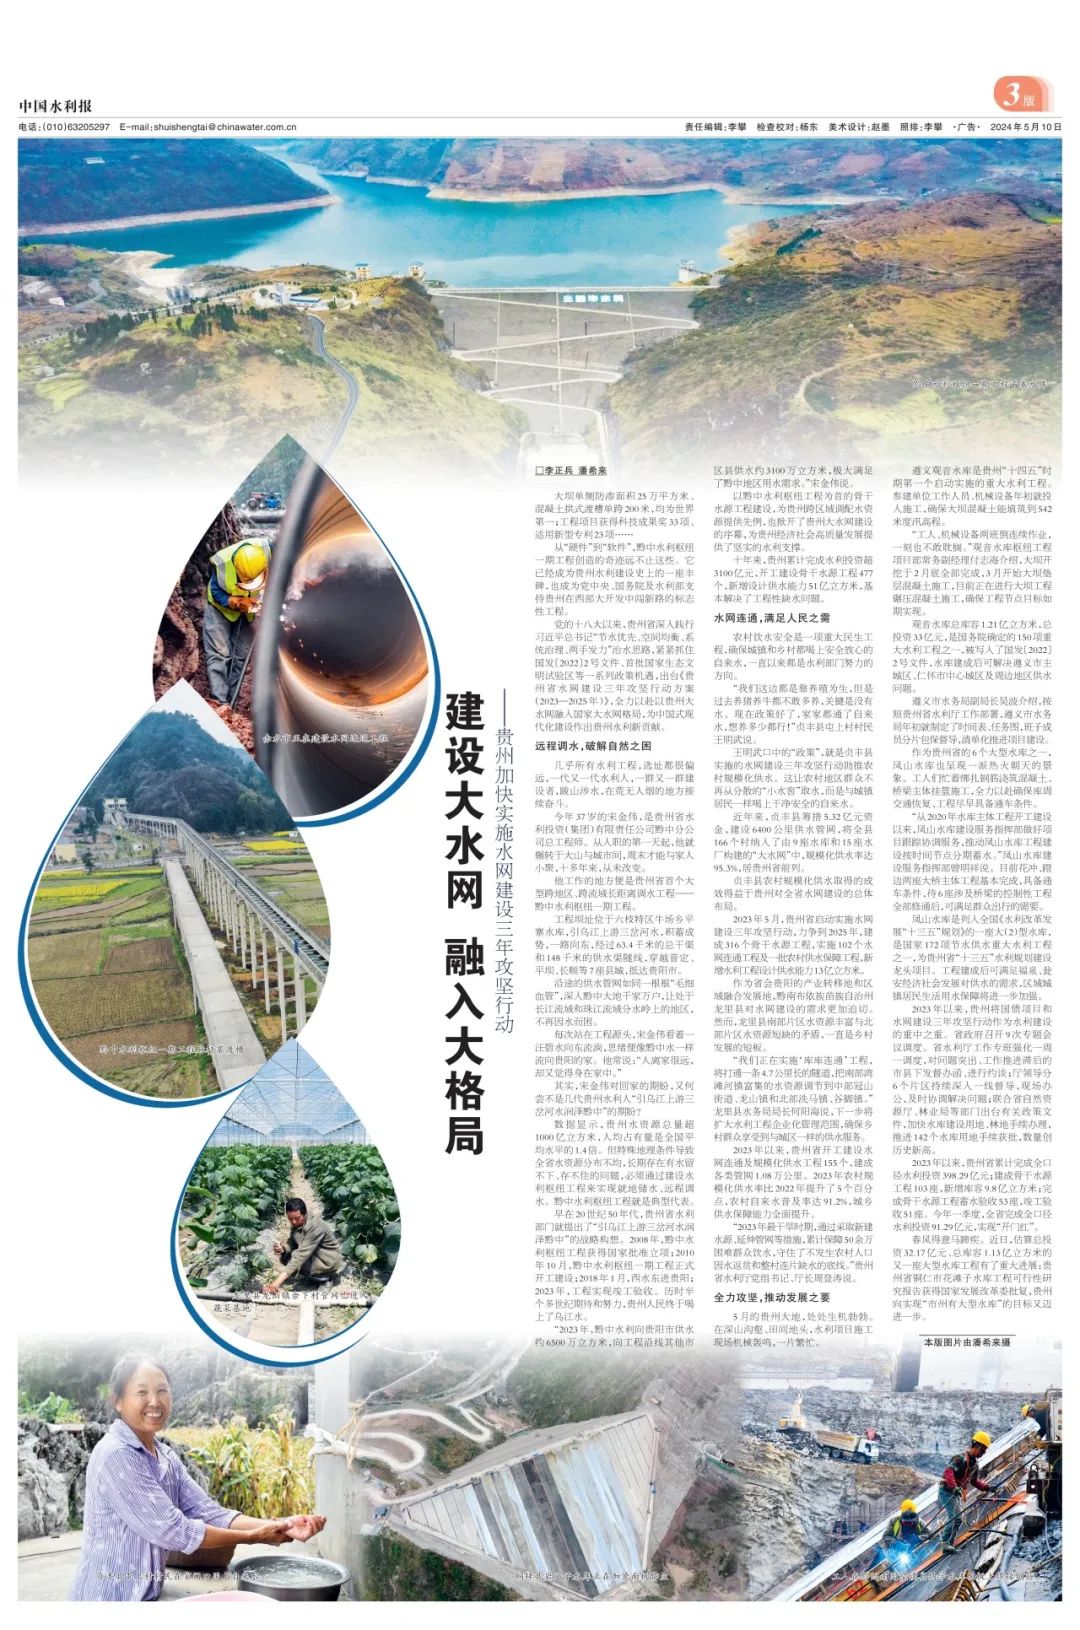 中国水利报整版报道:贵州建设大水网 融入大格局